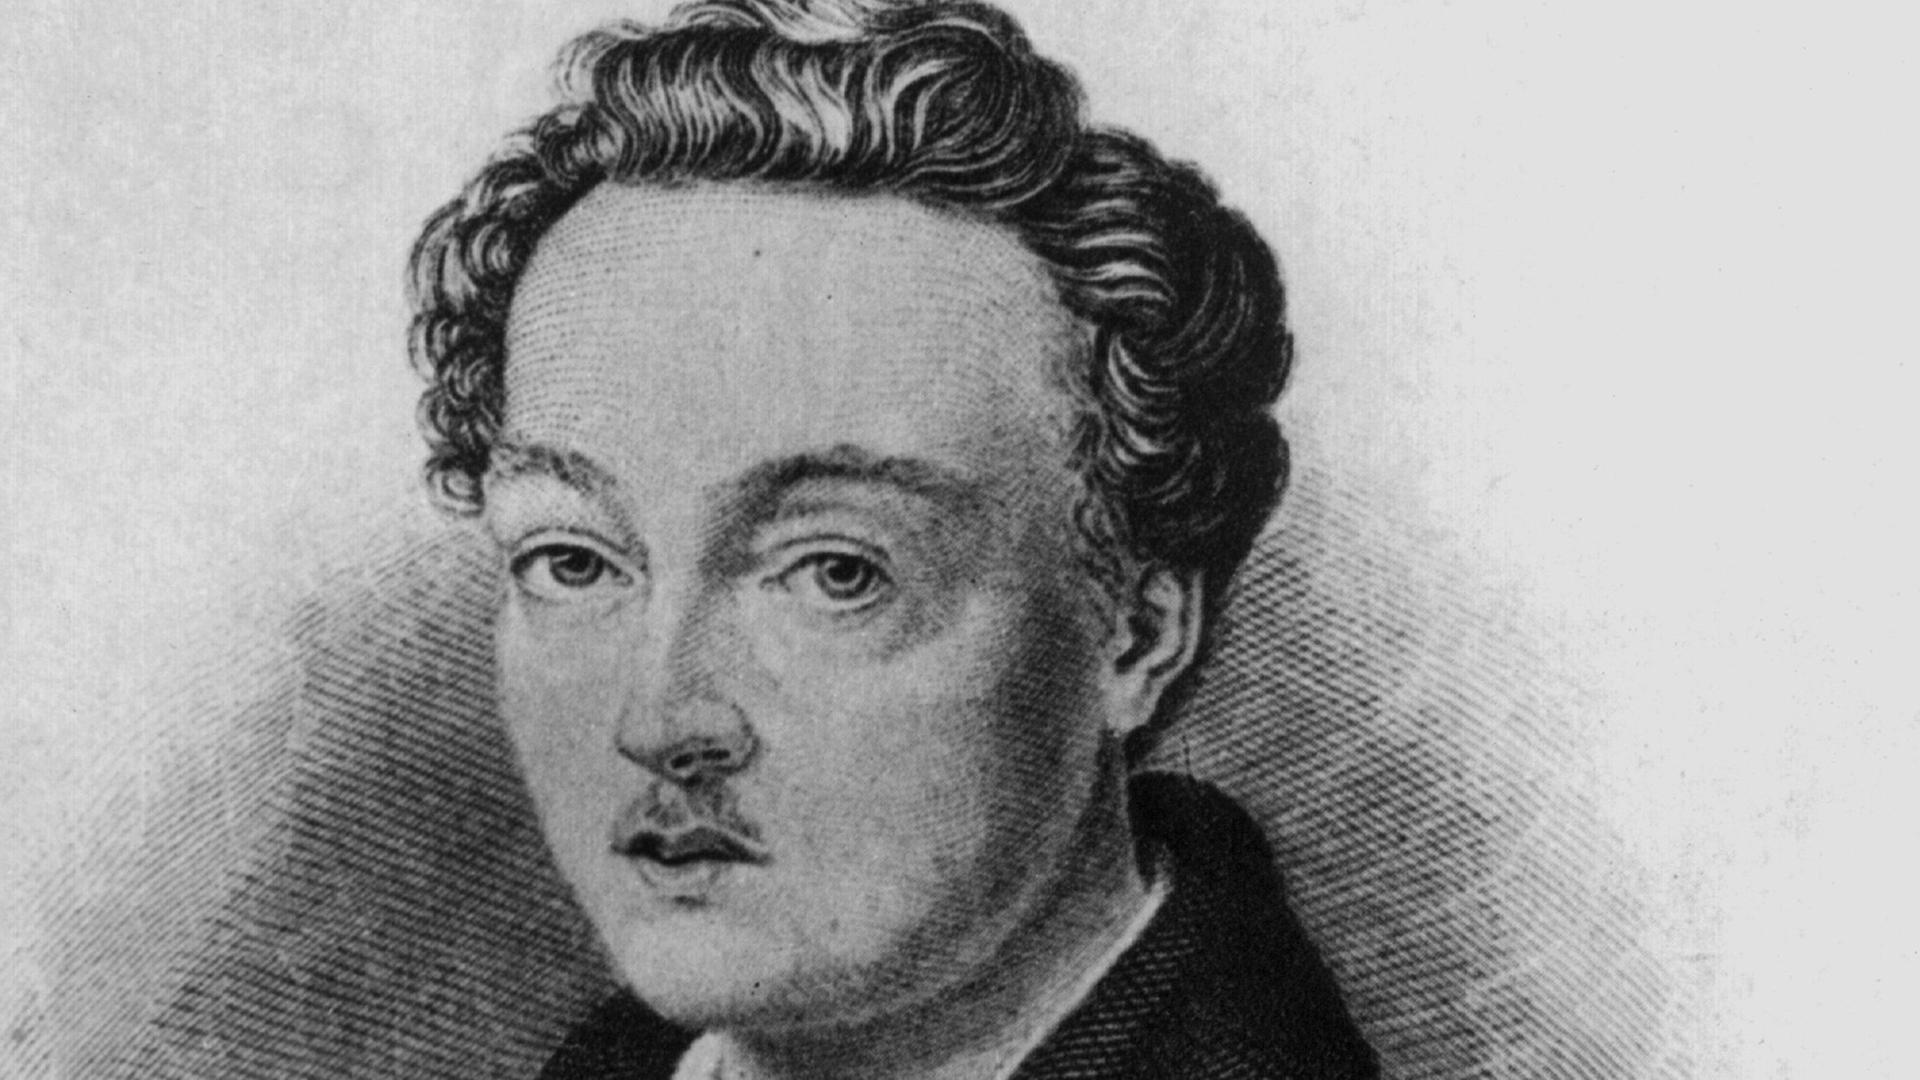 Georg Büchner, deutscher Dramatiker ("Dantons Tod"), geboren am 17. Oktober 1813 in Goddelau bei Darmstadt, gestorben am 19. Februar 1837 in Zürich.